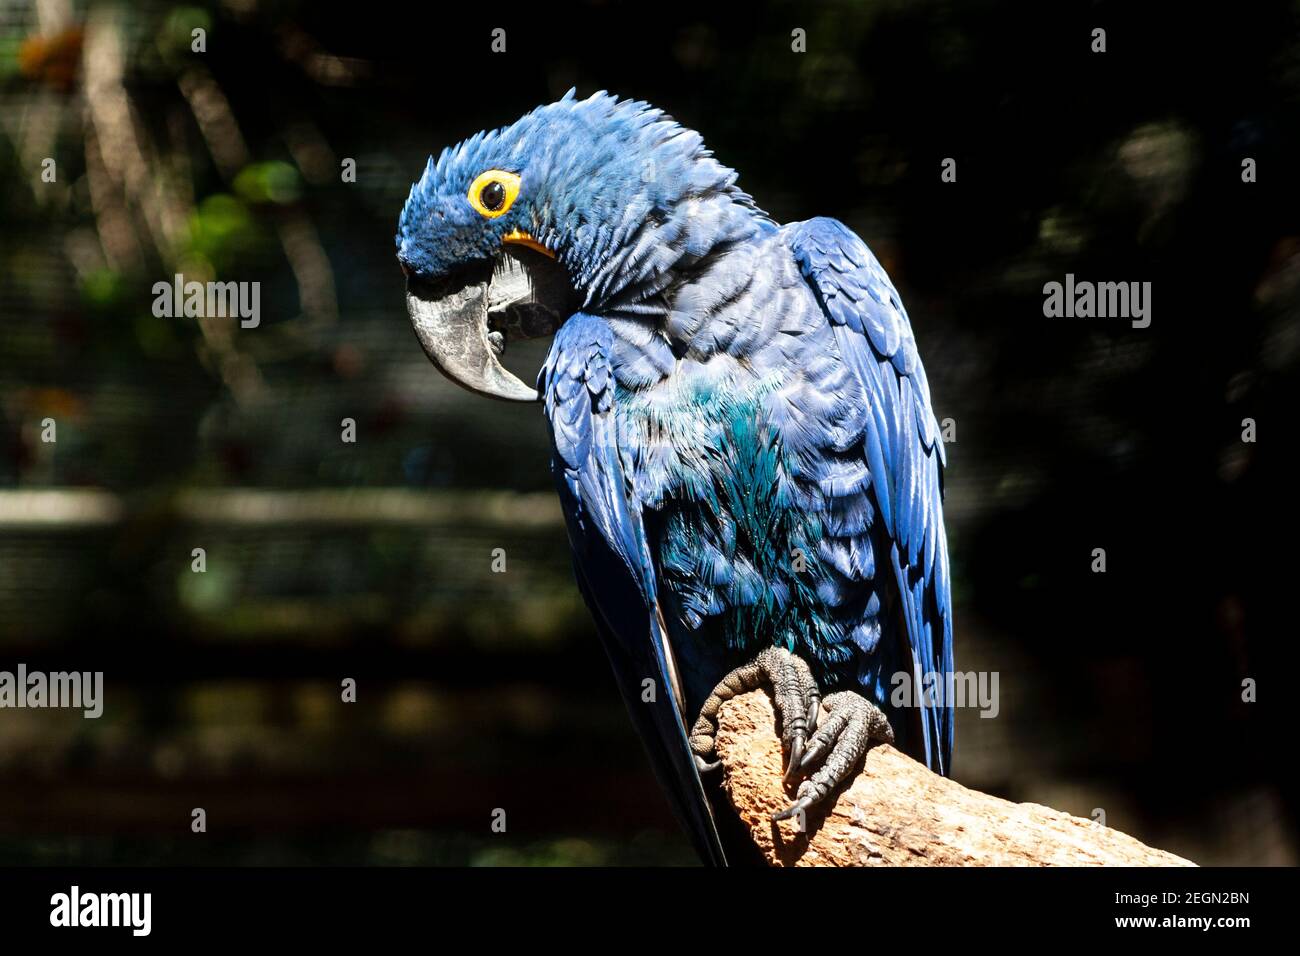 Macaw bleu ou macaw jacinthe (Anodorhynchus hyacinthinus) Perching sur une succursale au Brésil Banque D'Images